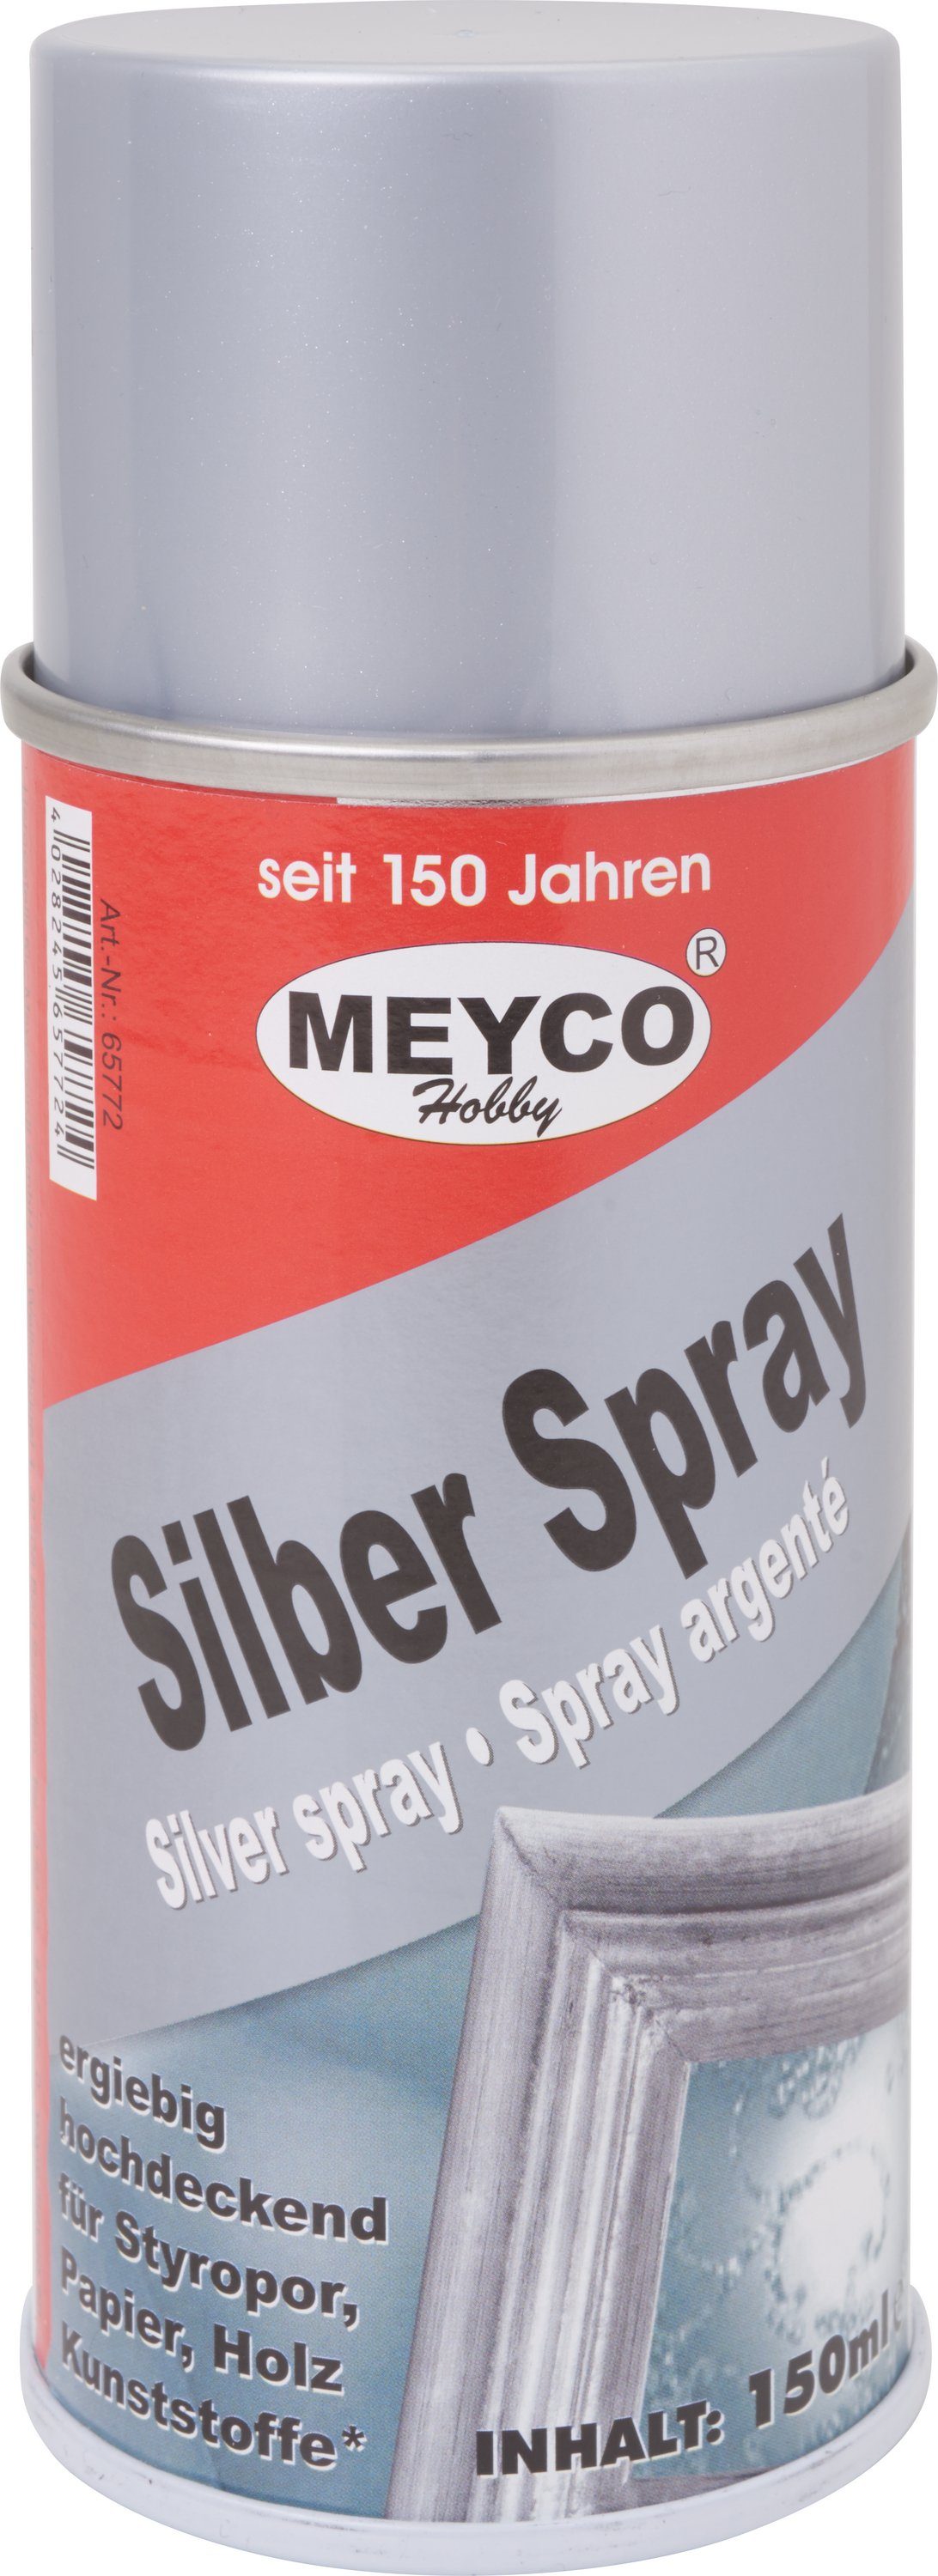 MEYCO Hobby Sprühfarbe Spray-Farbe Silber von Stanger, 150 ml | Sprühlacke